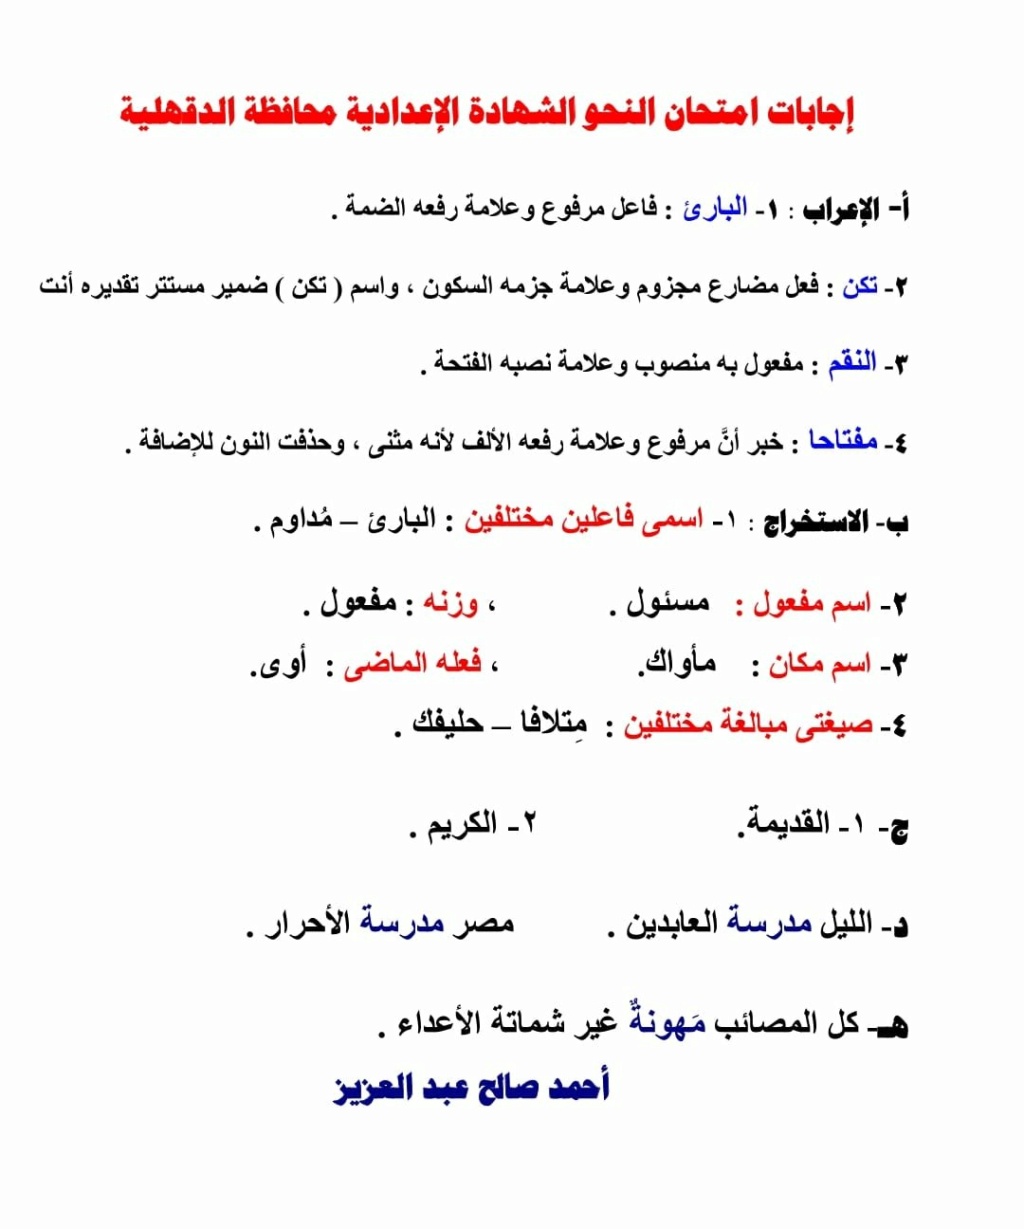 امتحان اللغة العربية للصف الثالث الاعدادي الترم الثاني 2022 محافظة القليوبية 3_76311